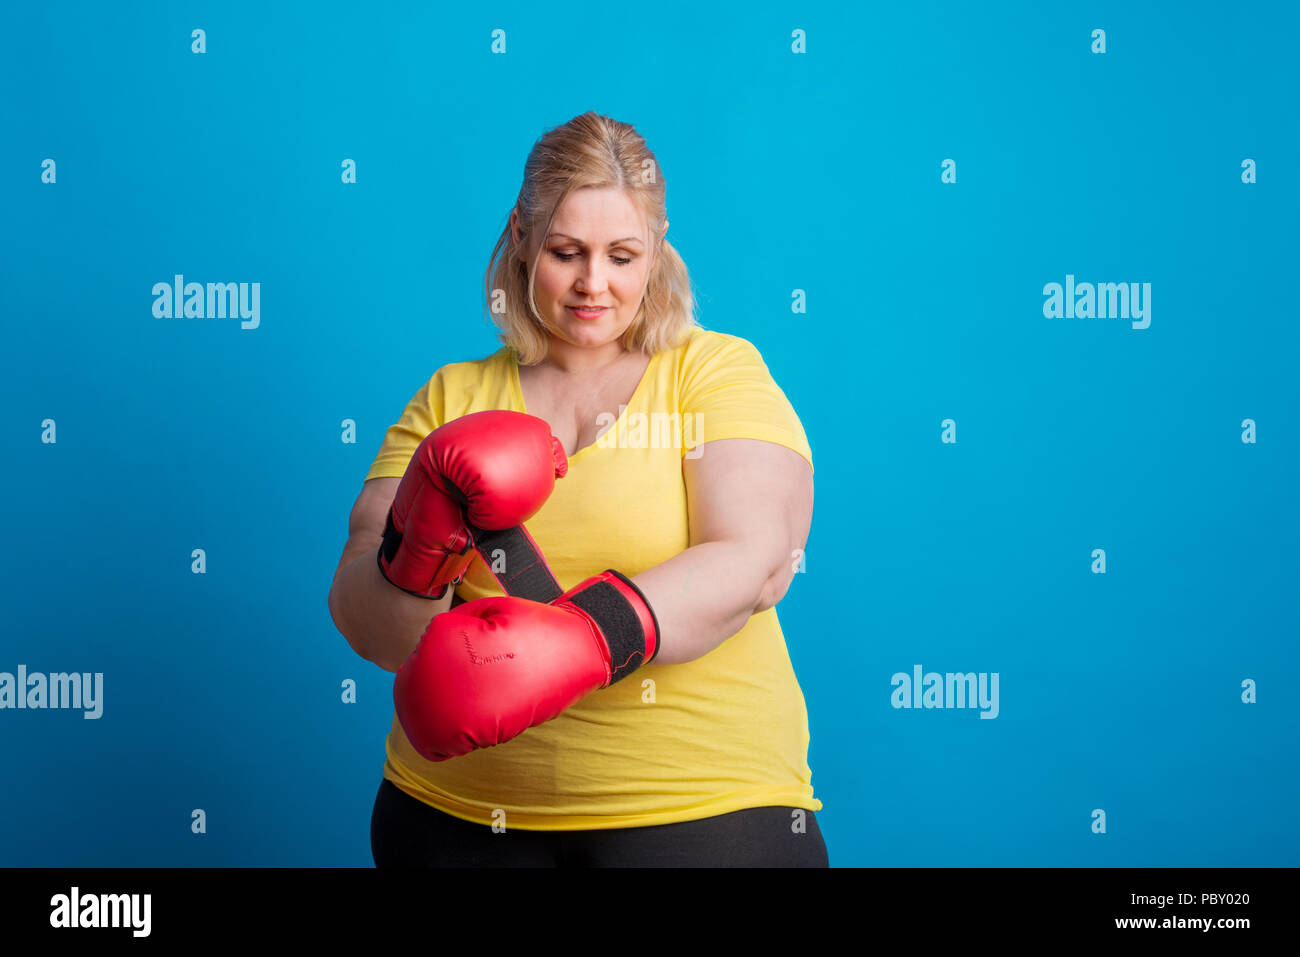 Portrait Of Happy übergewichtige Frau auf Boxhandschuhe im Studio. Stockfoto